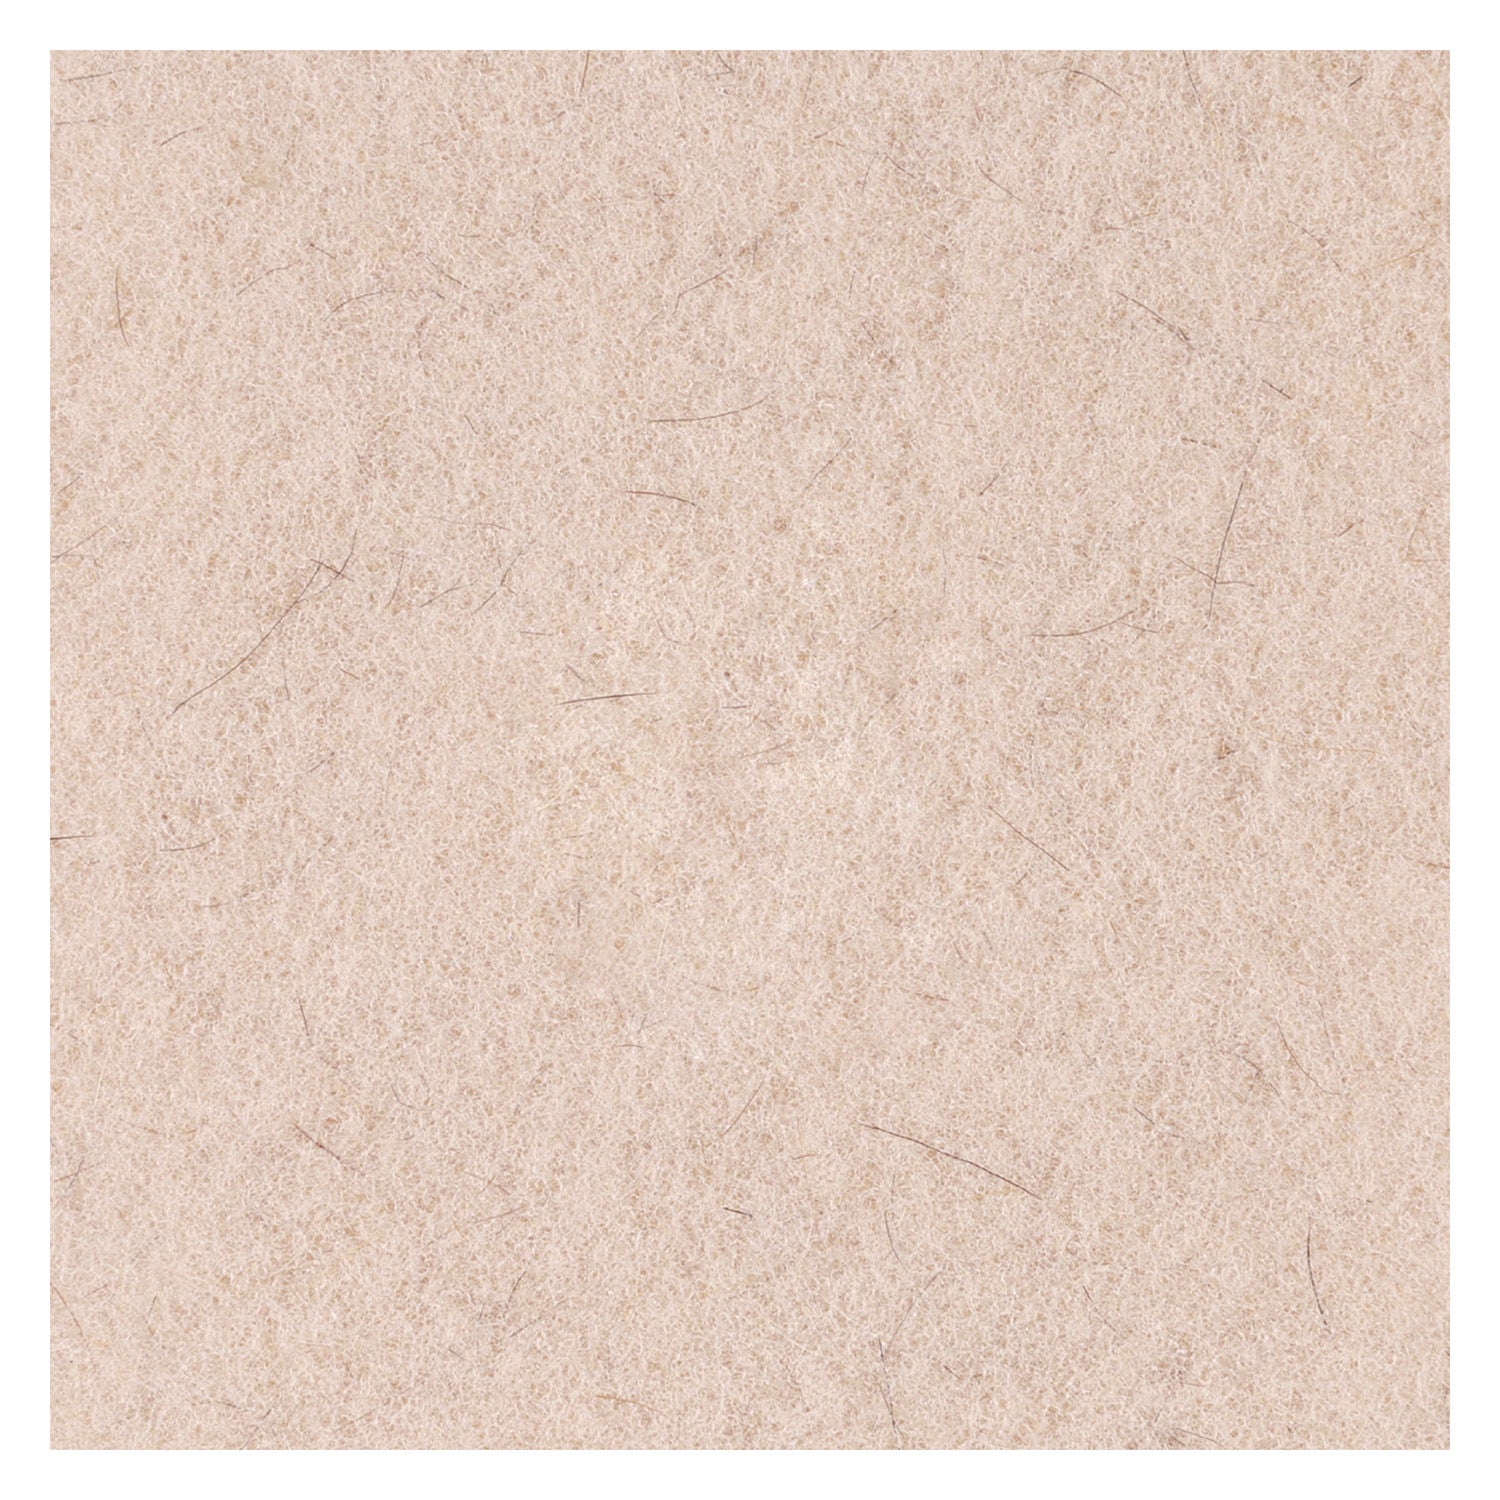 Natural Hog Hair Burnishing Floor Pads, 21" Diameter, Tan, 5/Carton - 6